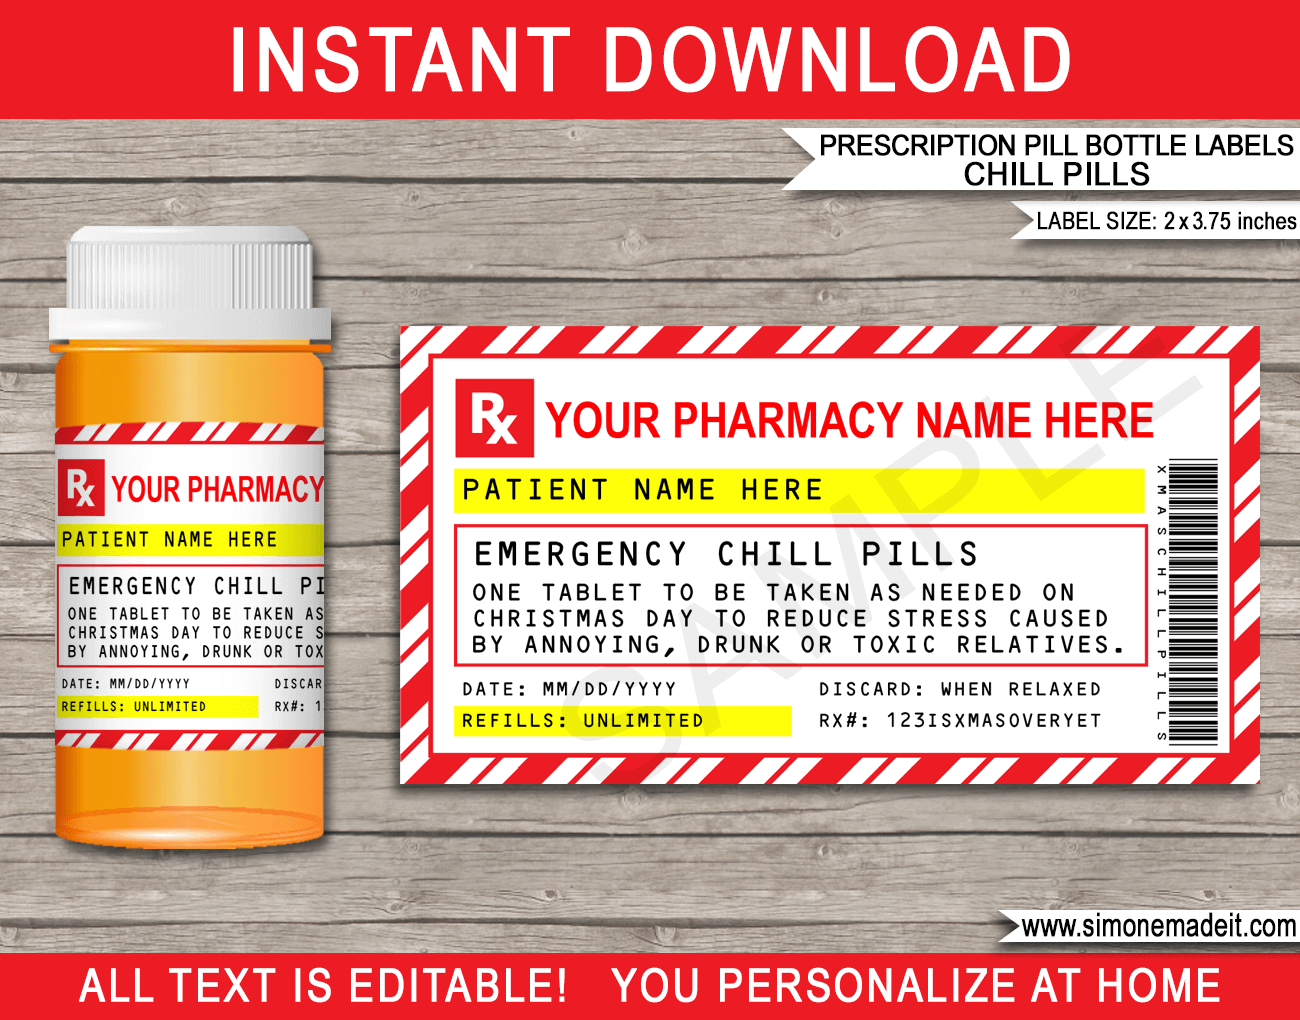 Prescription Labels Template